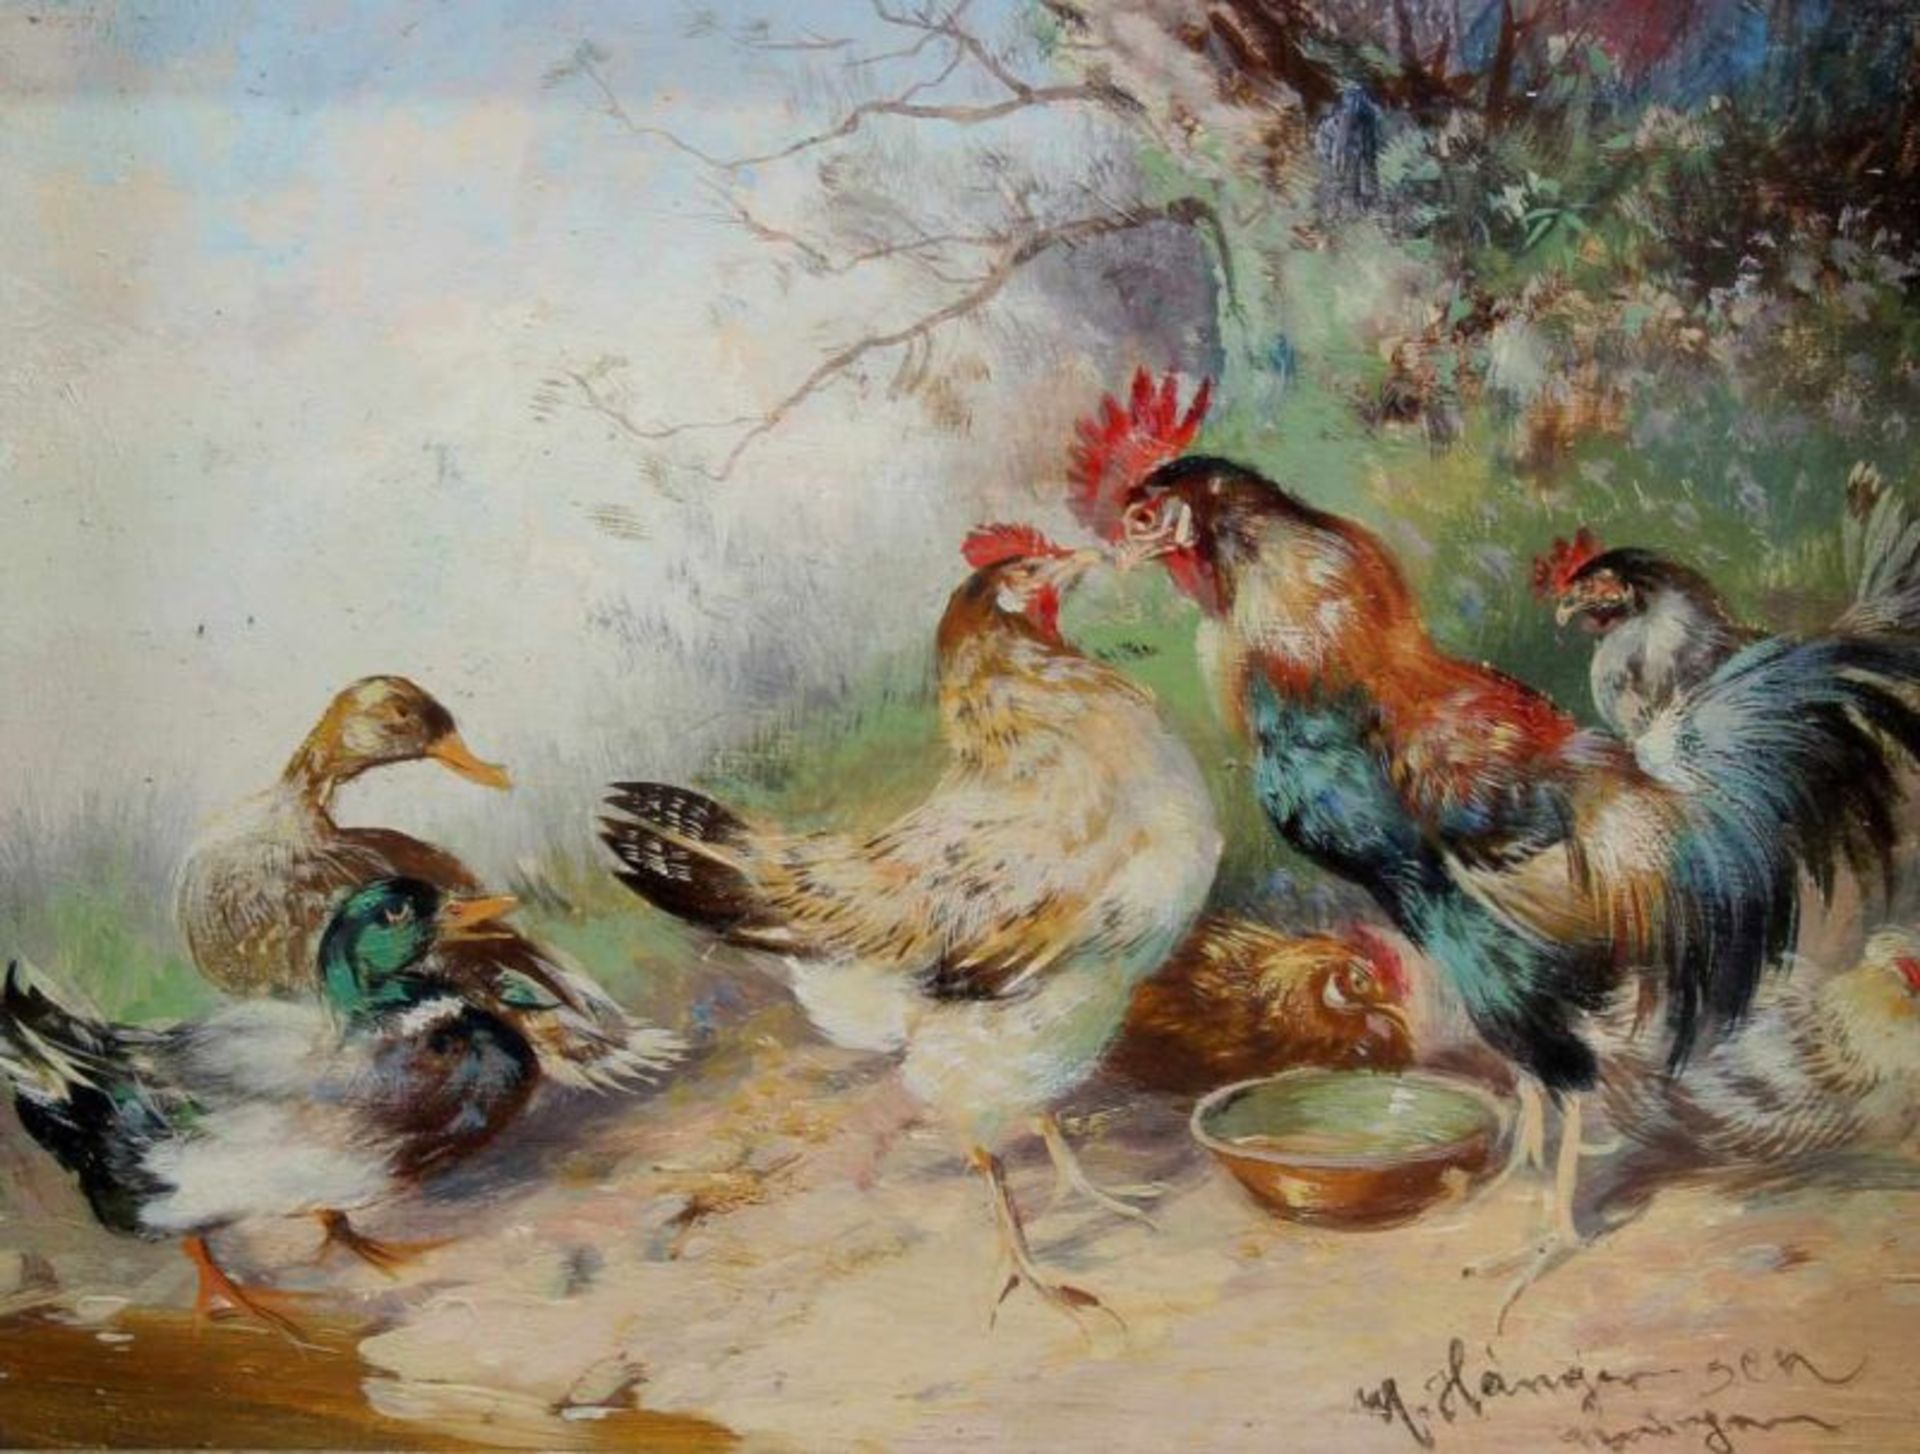 Hänger d.Ä., Max (München 1874 - 1955, Tier- und Landschaftsmaler), "Hühner und Enten in